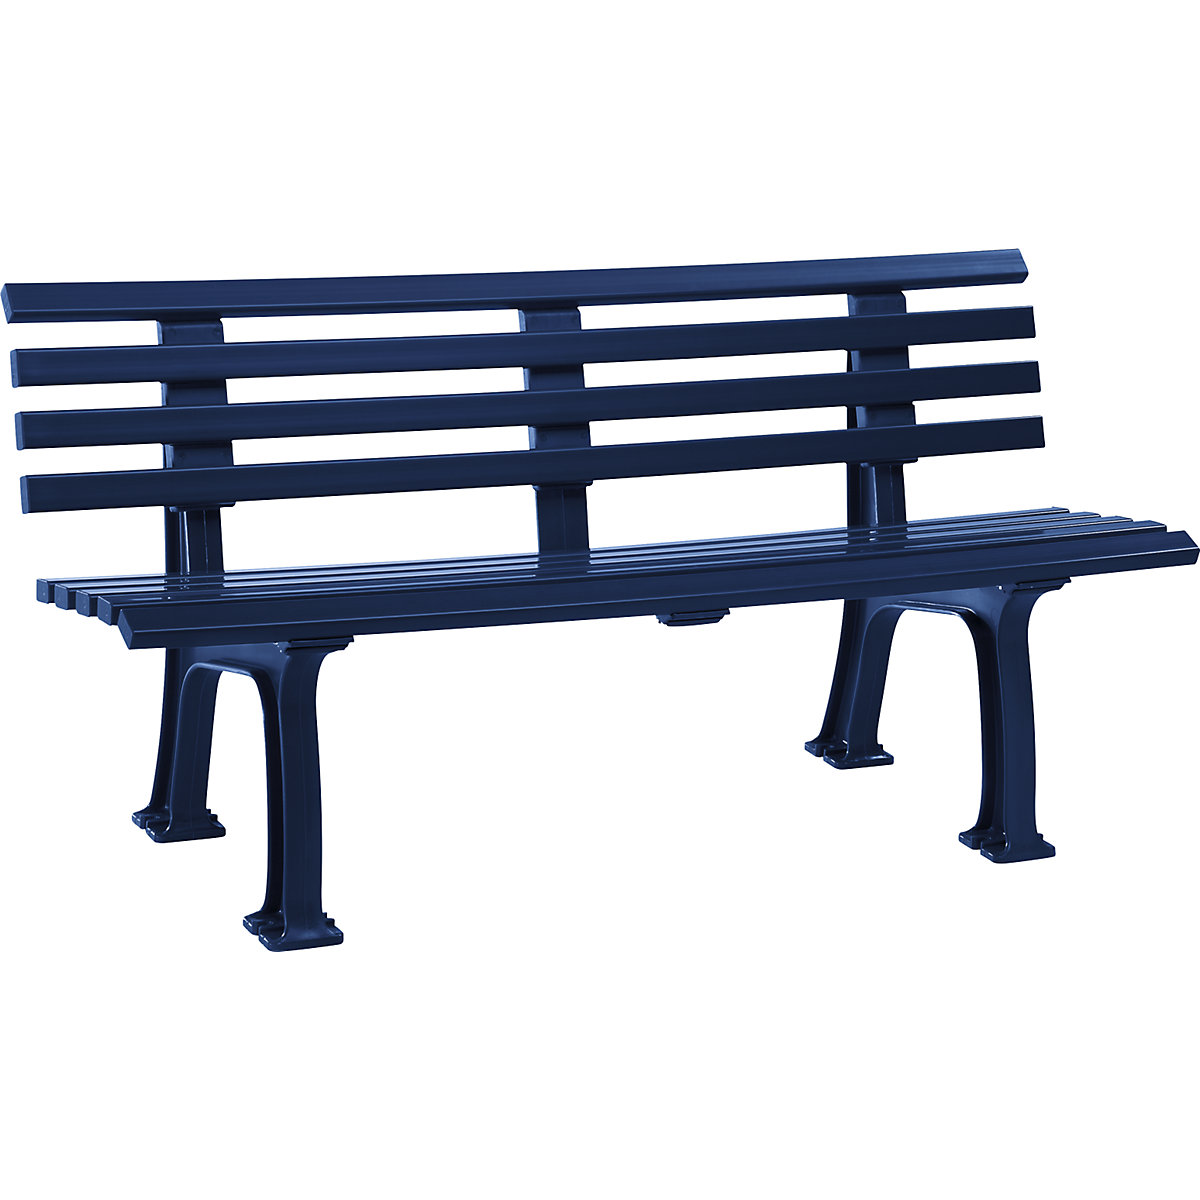 Parková lavička z plastu, s 9 lištami, šířka 1500 mm, ocelově modrá-4